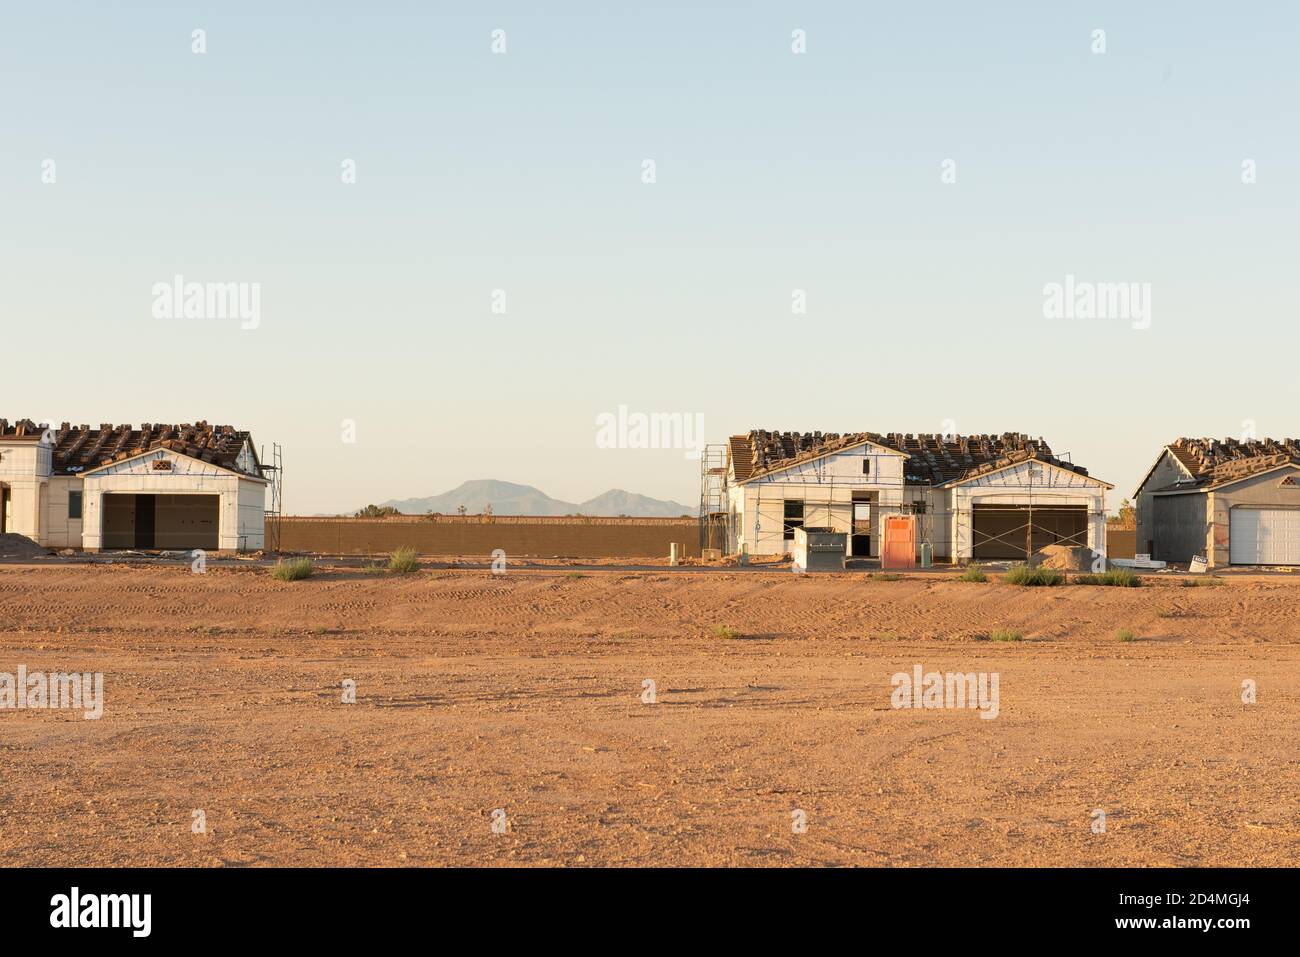 Eine Reihe von Häusern, die auf einem unbefestigten Grundstück mit einem leeren Grundstück dazwischen gebaut werden und Blick auf die Berge im Hintergrund steht in Zentral Arizona Bauboom. Stockfoto